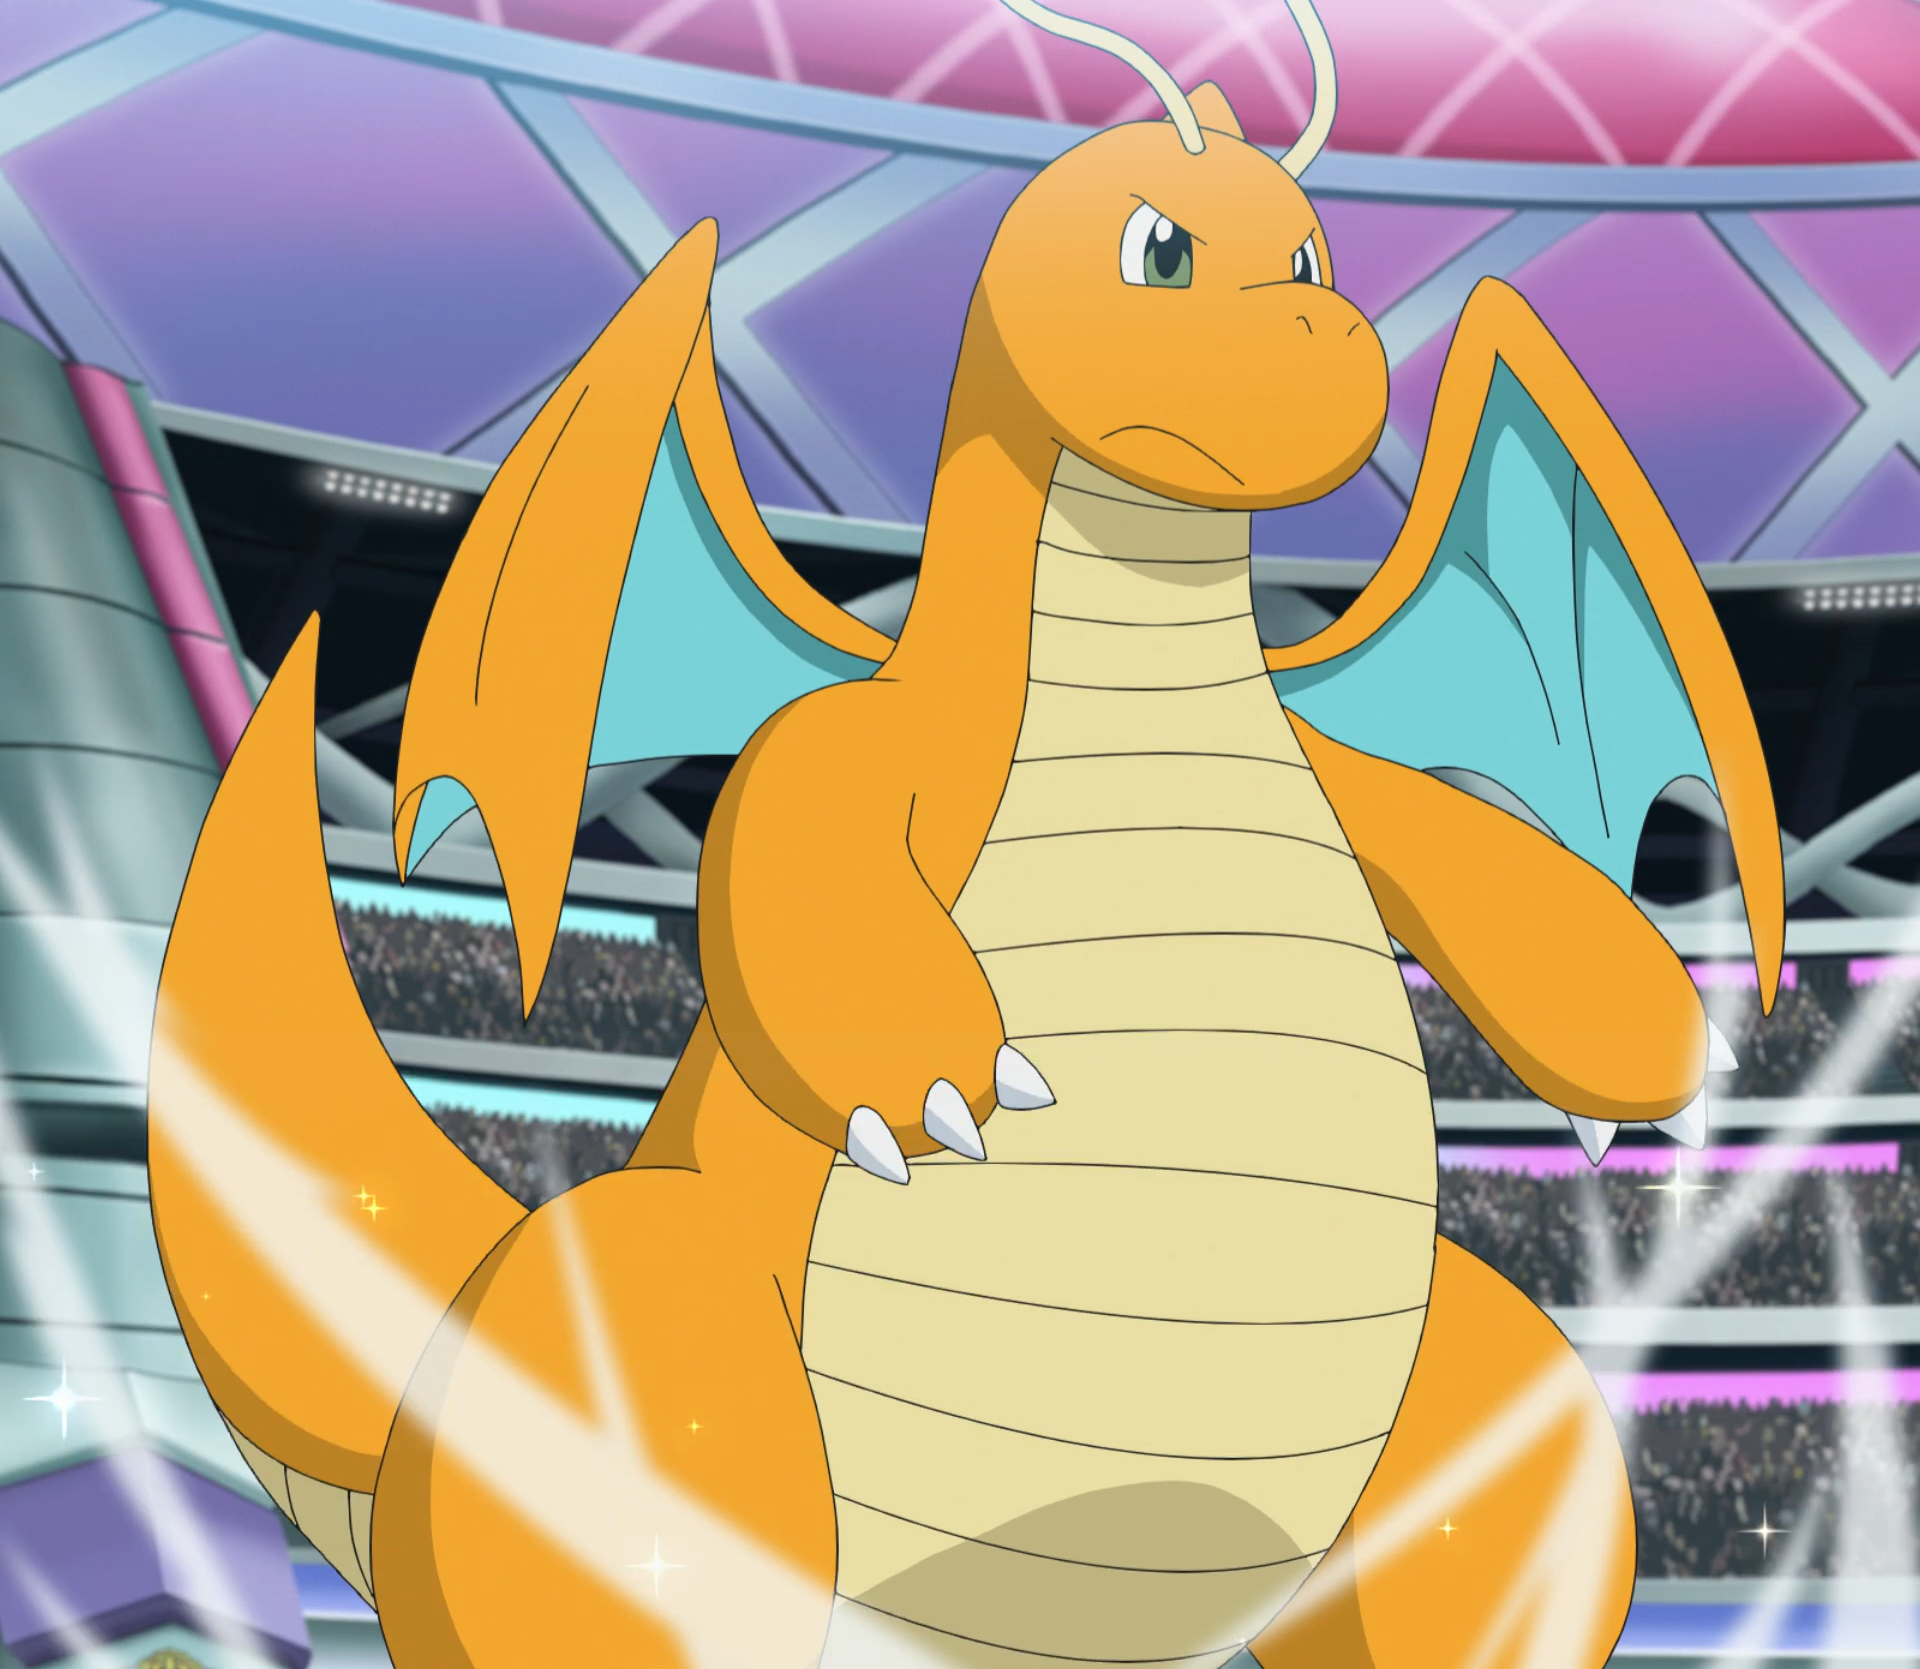 Cammy ⚡ on X: Quem tem o Dragonite mais forte no anime pokémon